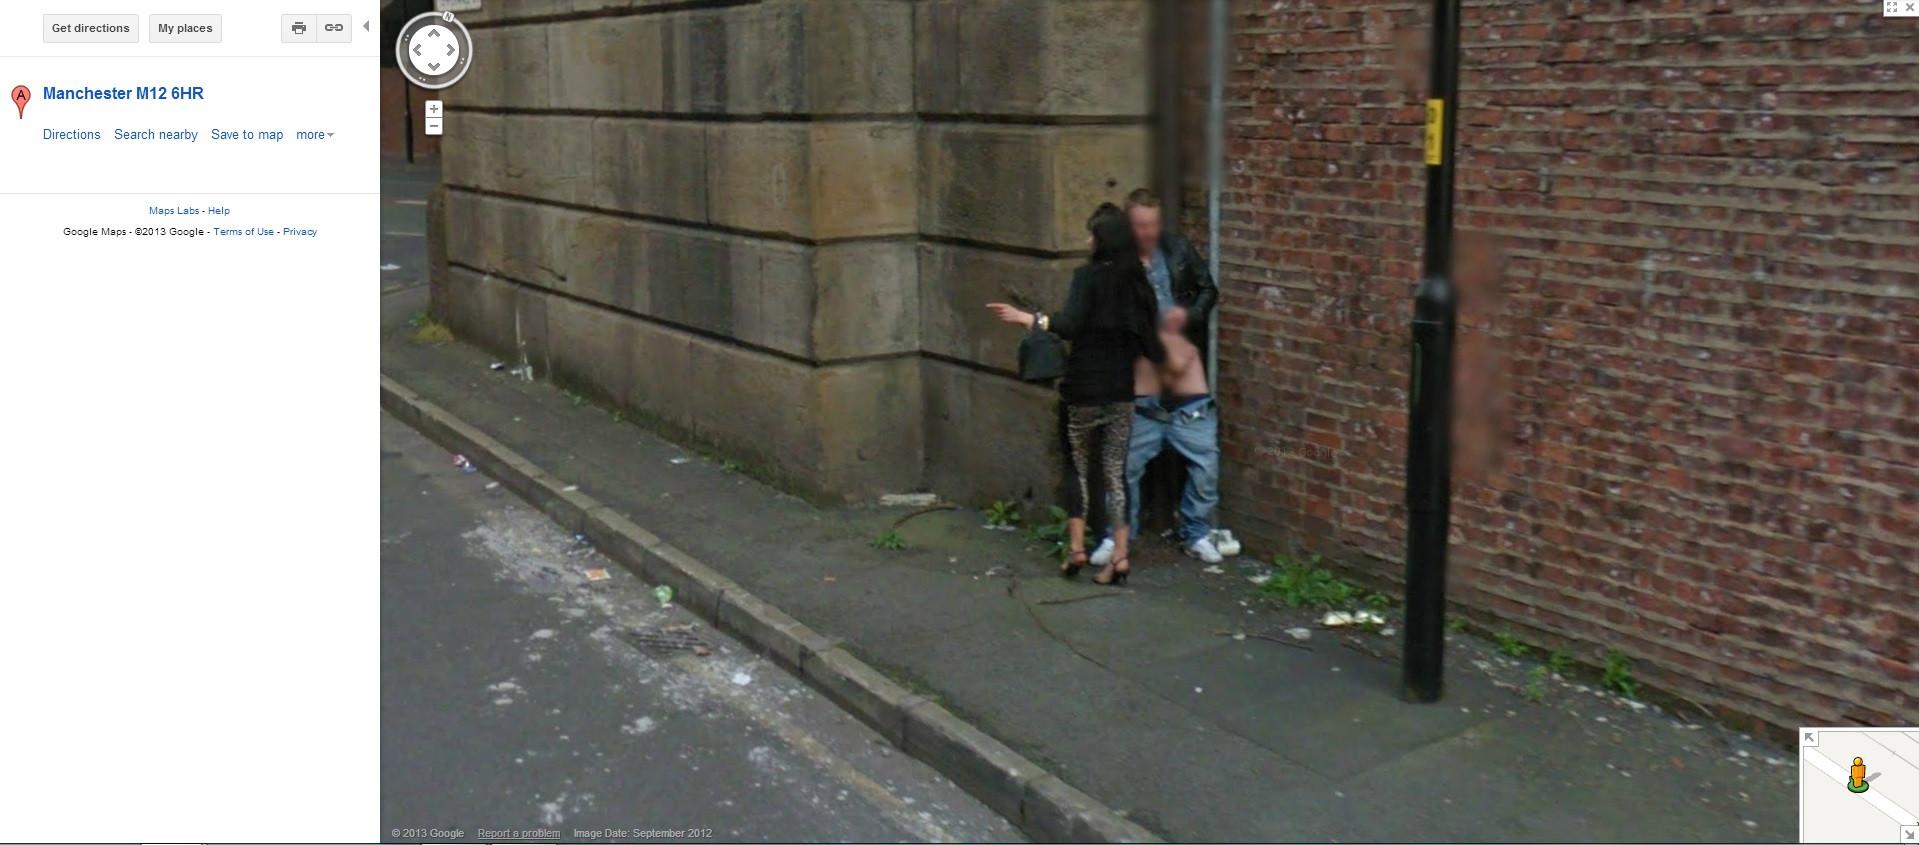 Google 卫星地图和街景拍摄中出现过哪些有趣